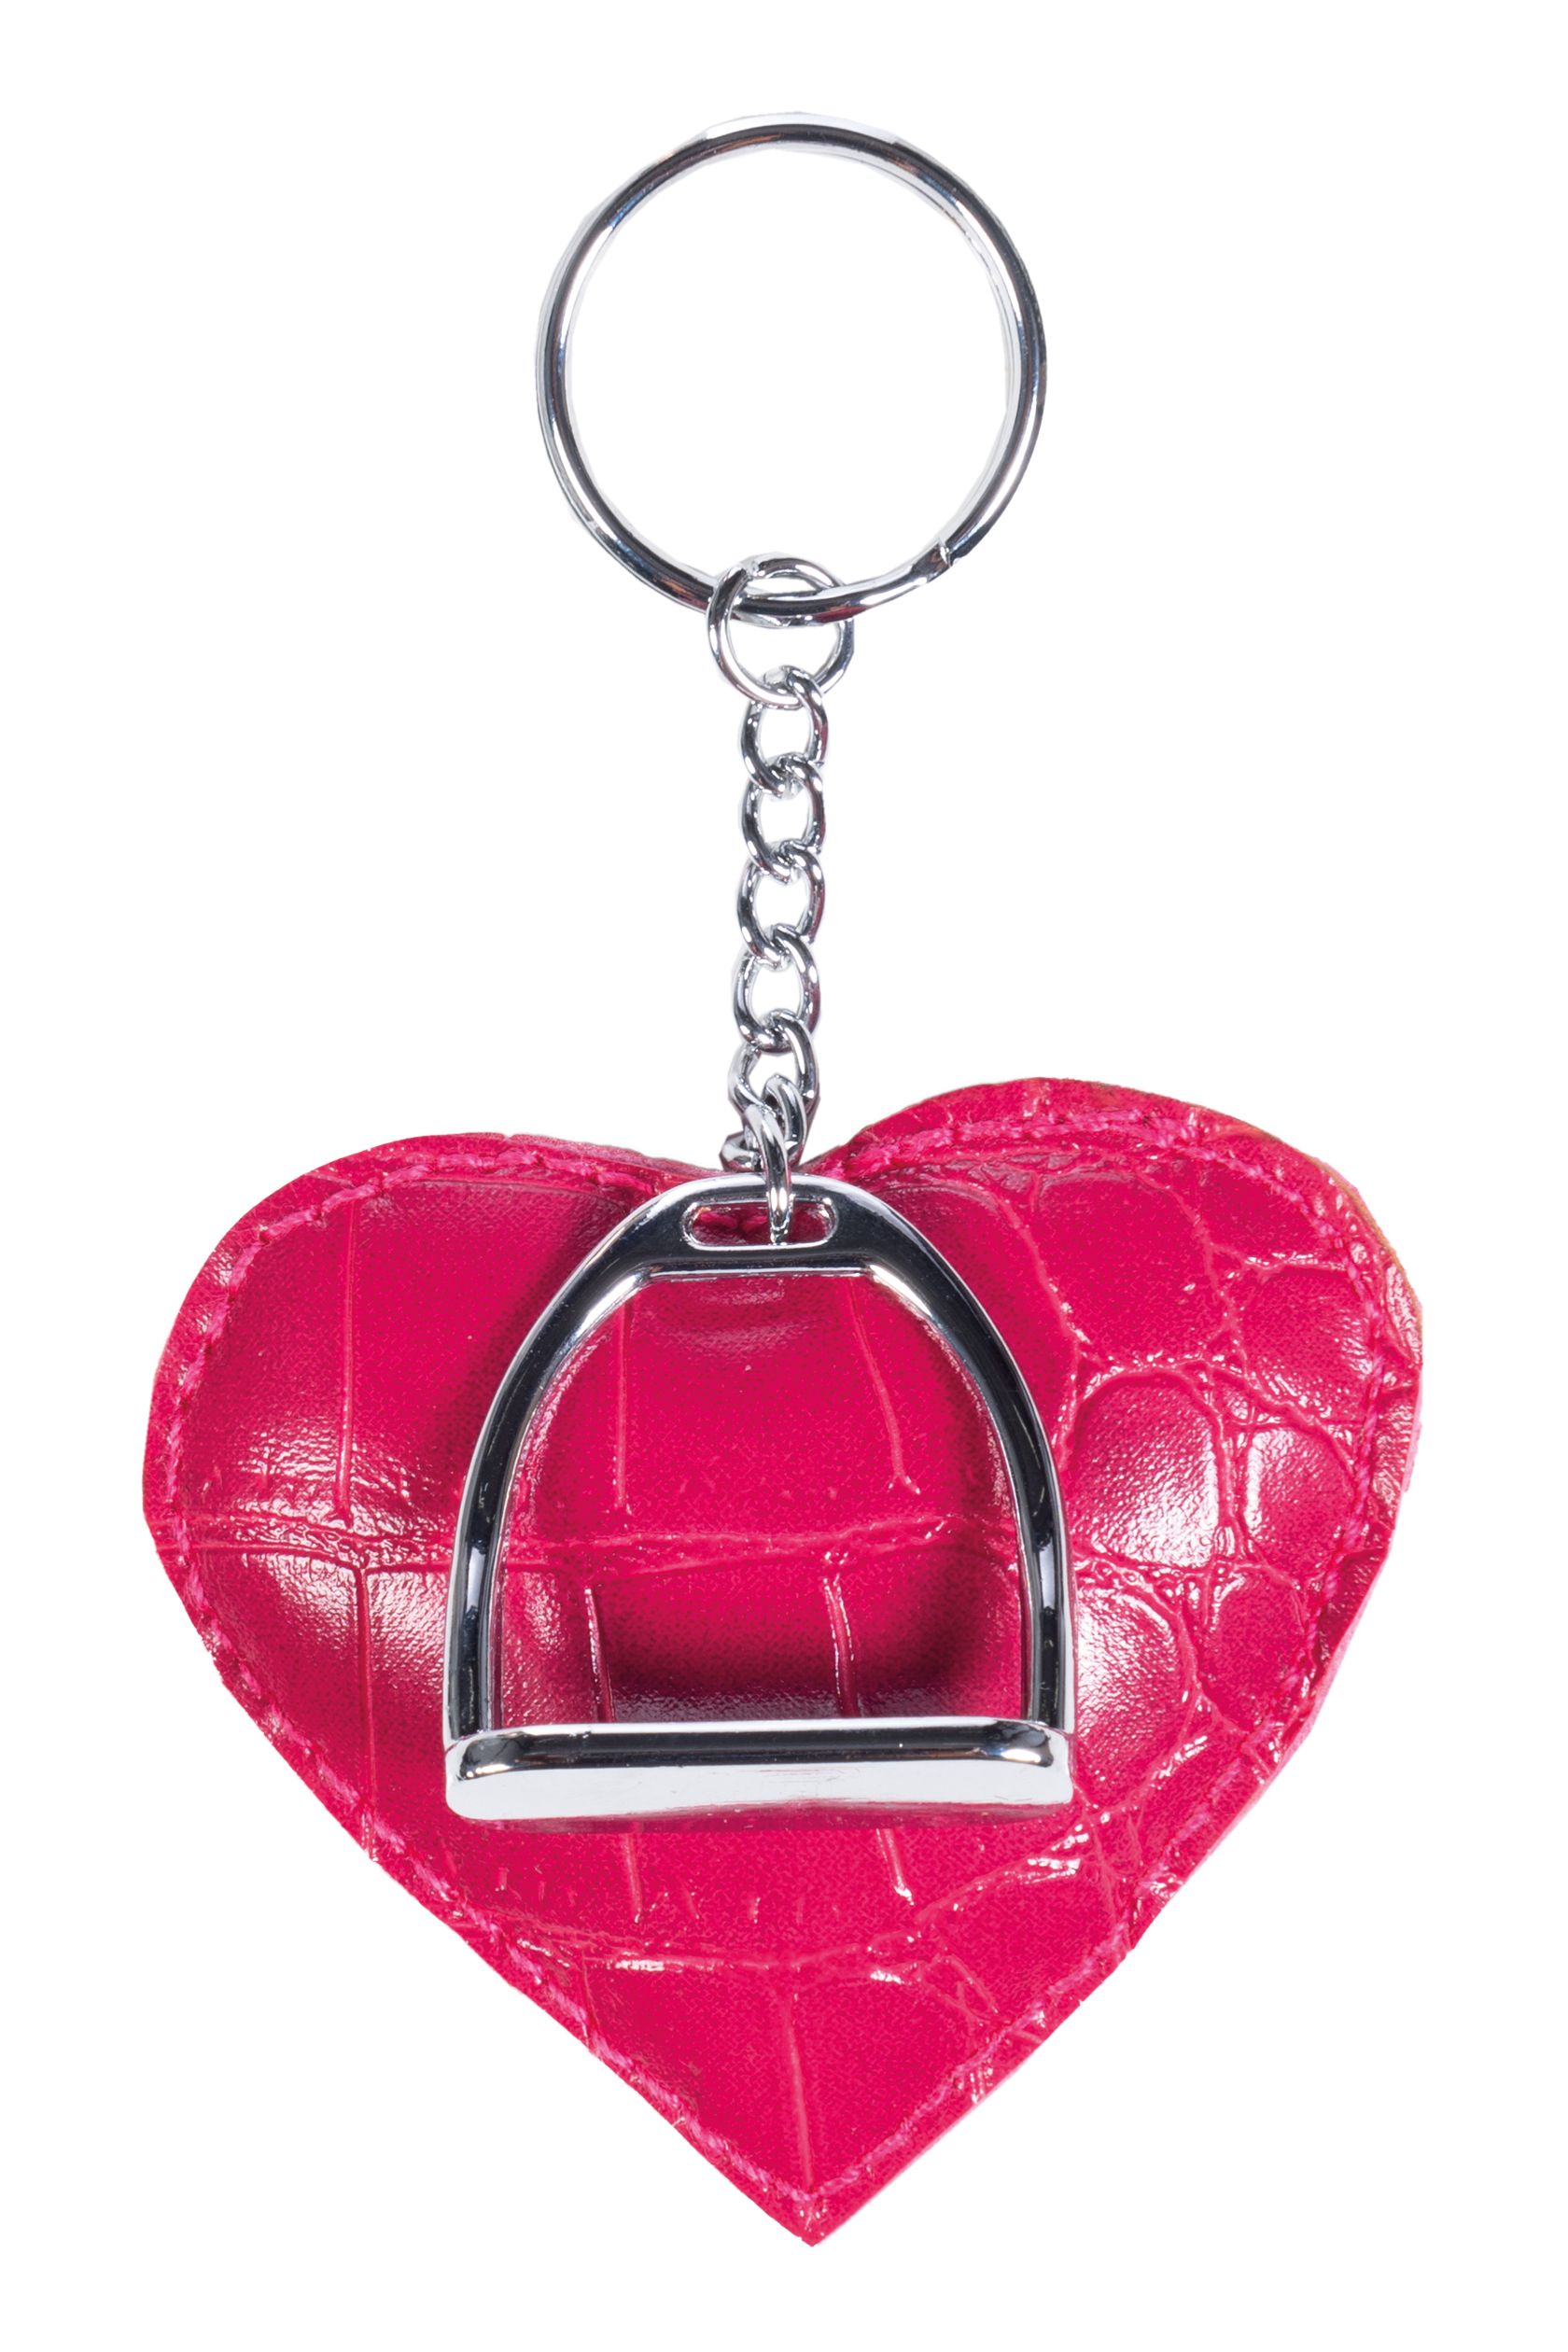 HKM zauberhafter Schlüsselanhänger Sweet Valentine - pink/silber - Stck.